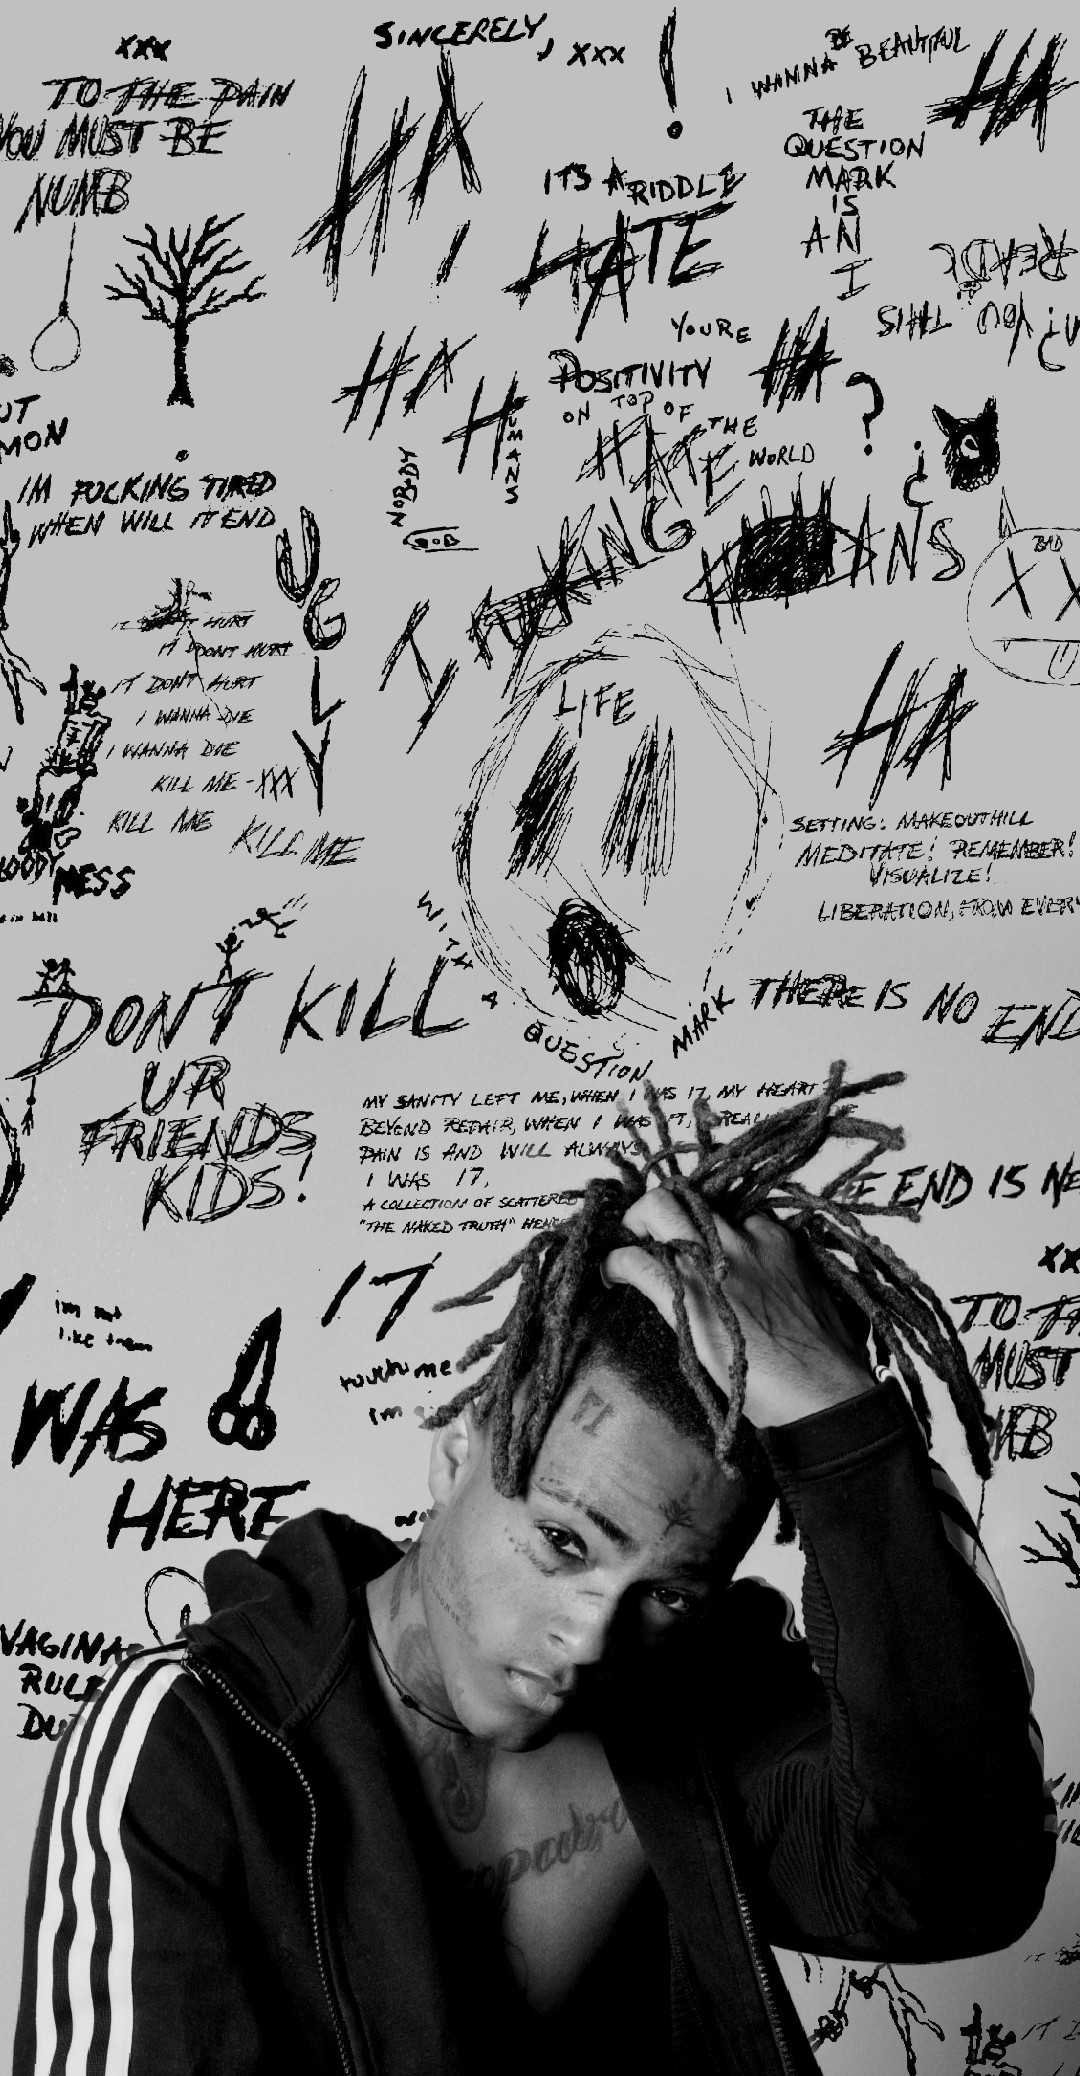 IPhone wallpaper of xxxtentacion with his lyrics - XXXTentacion